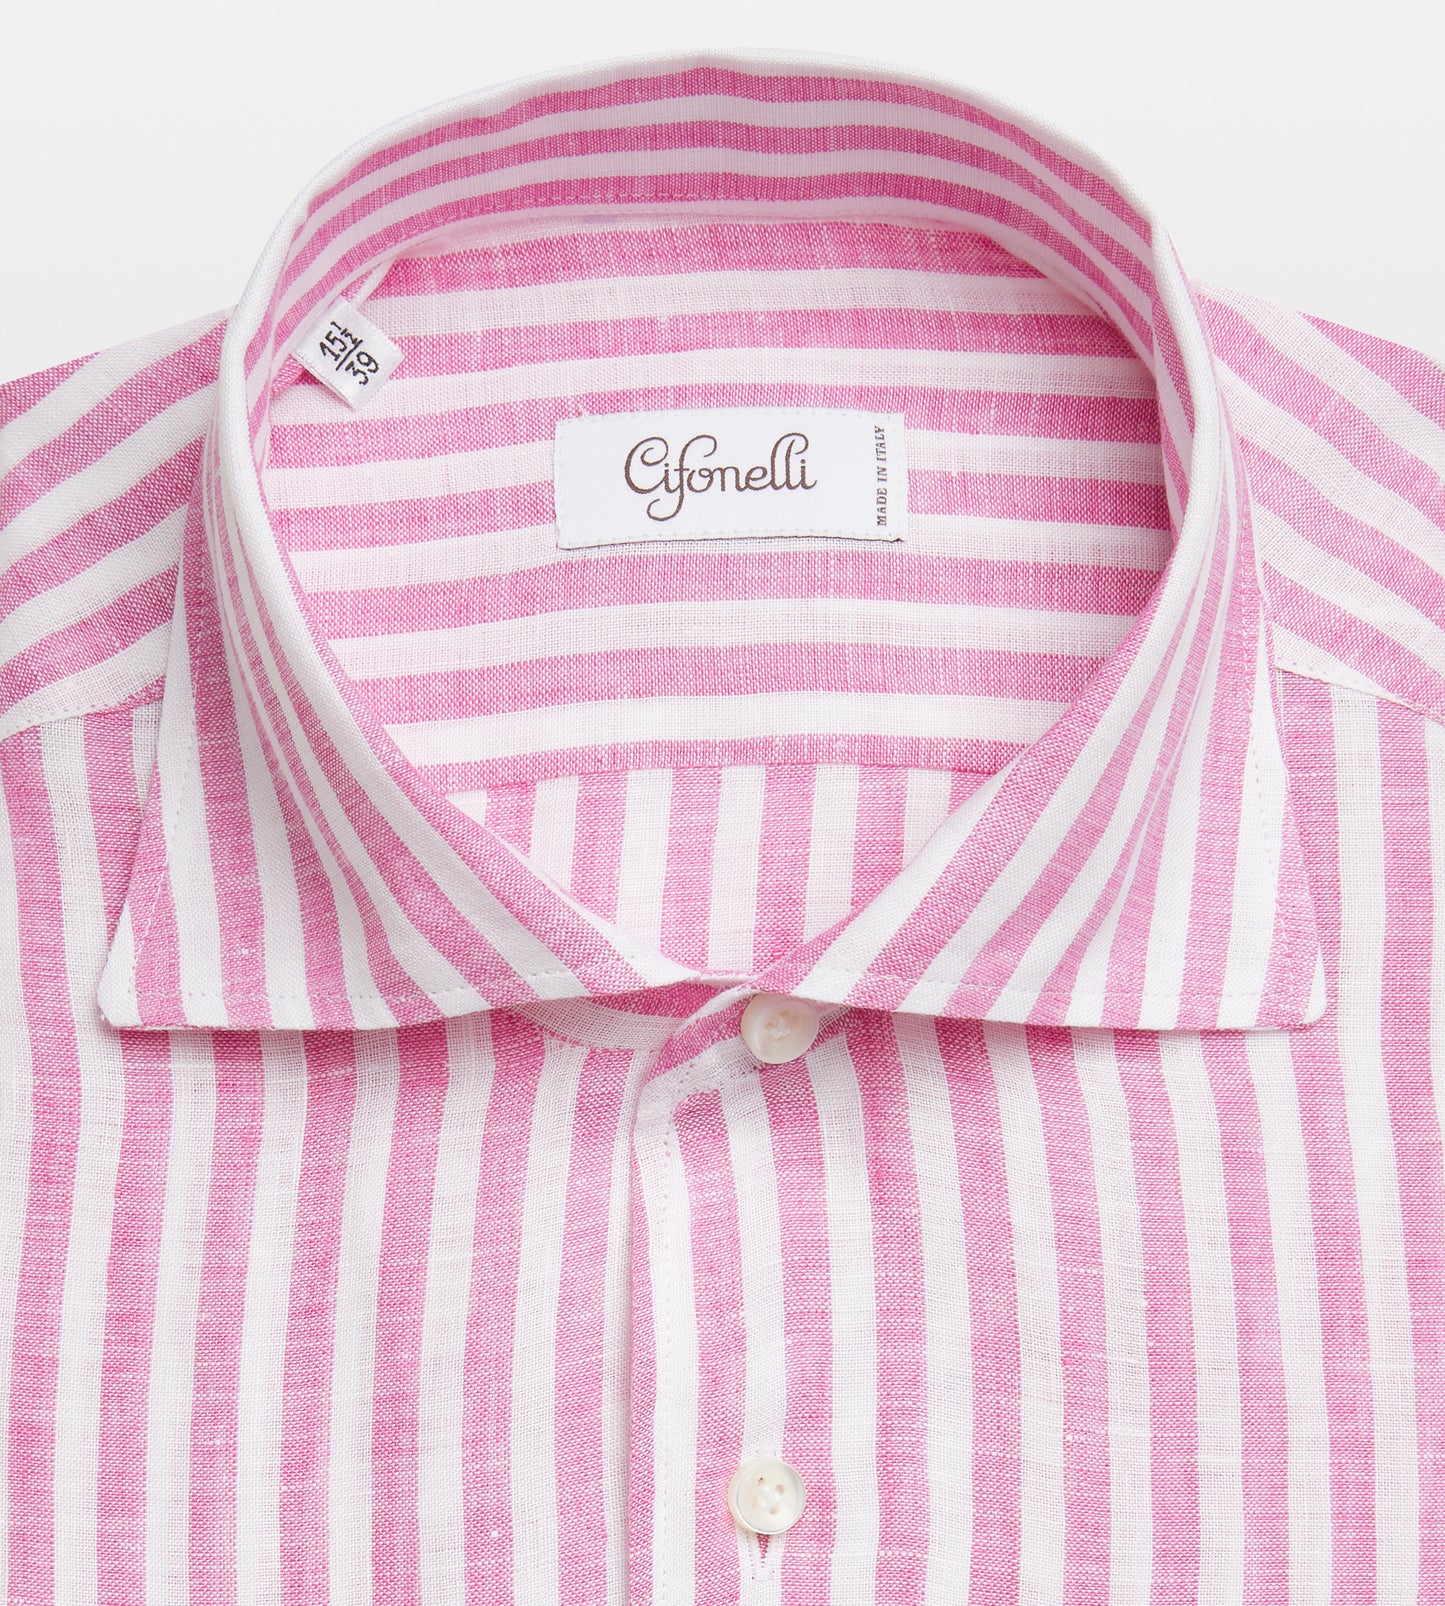 Chemise rayée rose et blanche en lin